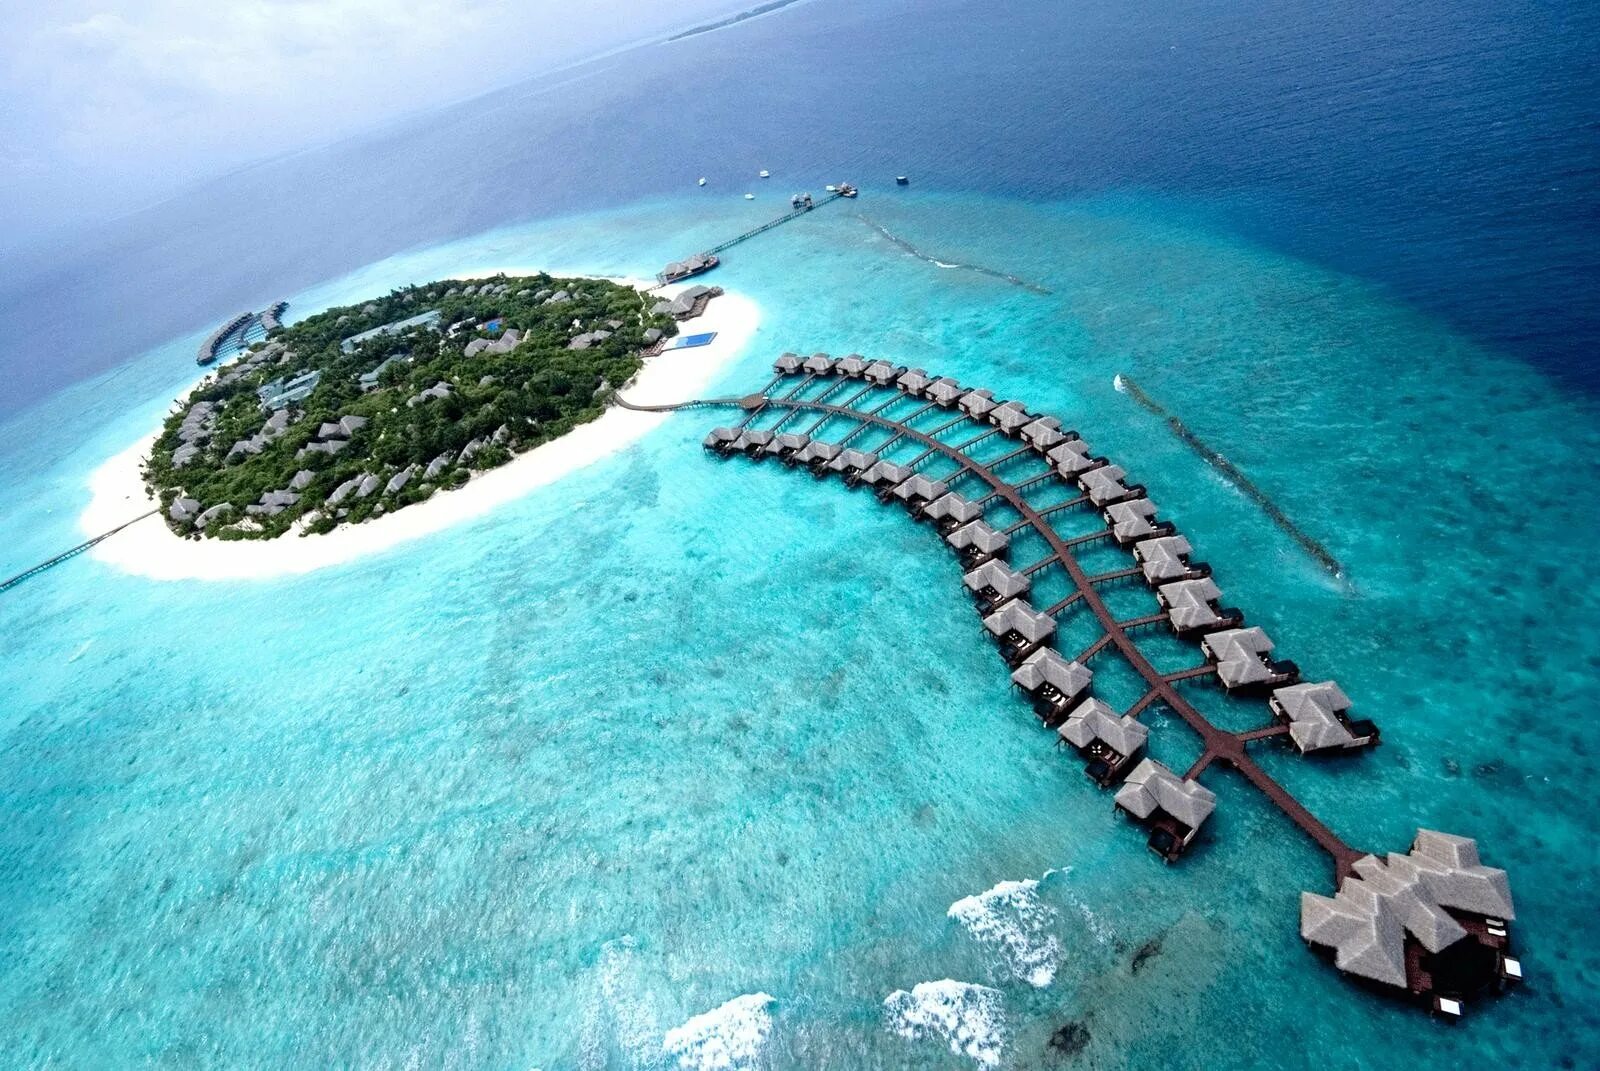 Хаа Алифу Атолл Мальдивы. Мальдивы Гаафу-Дхаалу. Остров Ган Мальдивы. Аэропорт gan Мальдивы. 3 любых острова